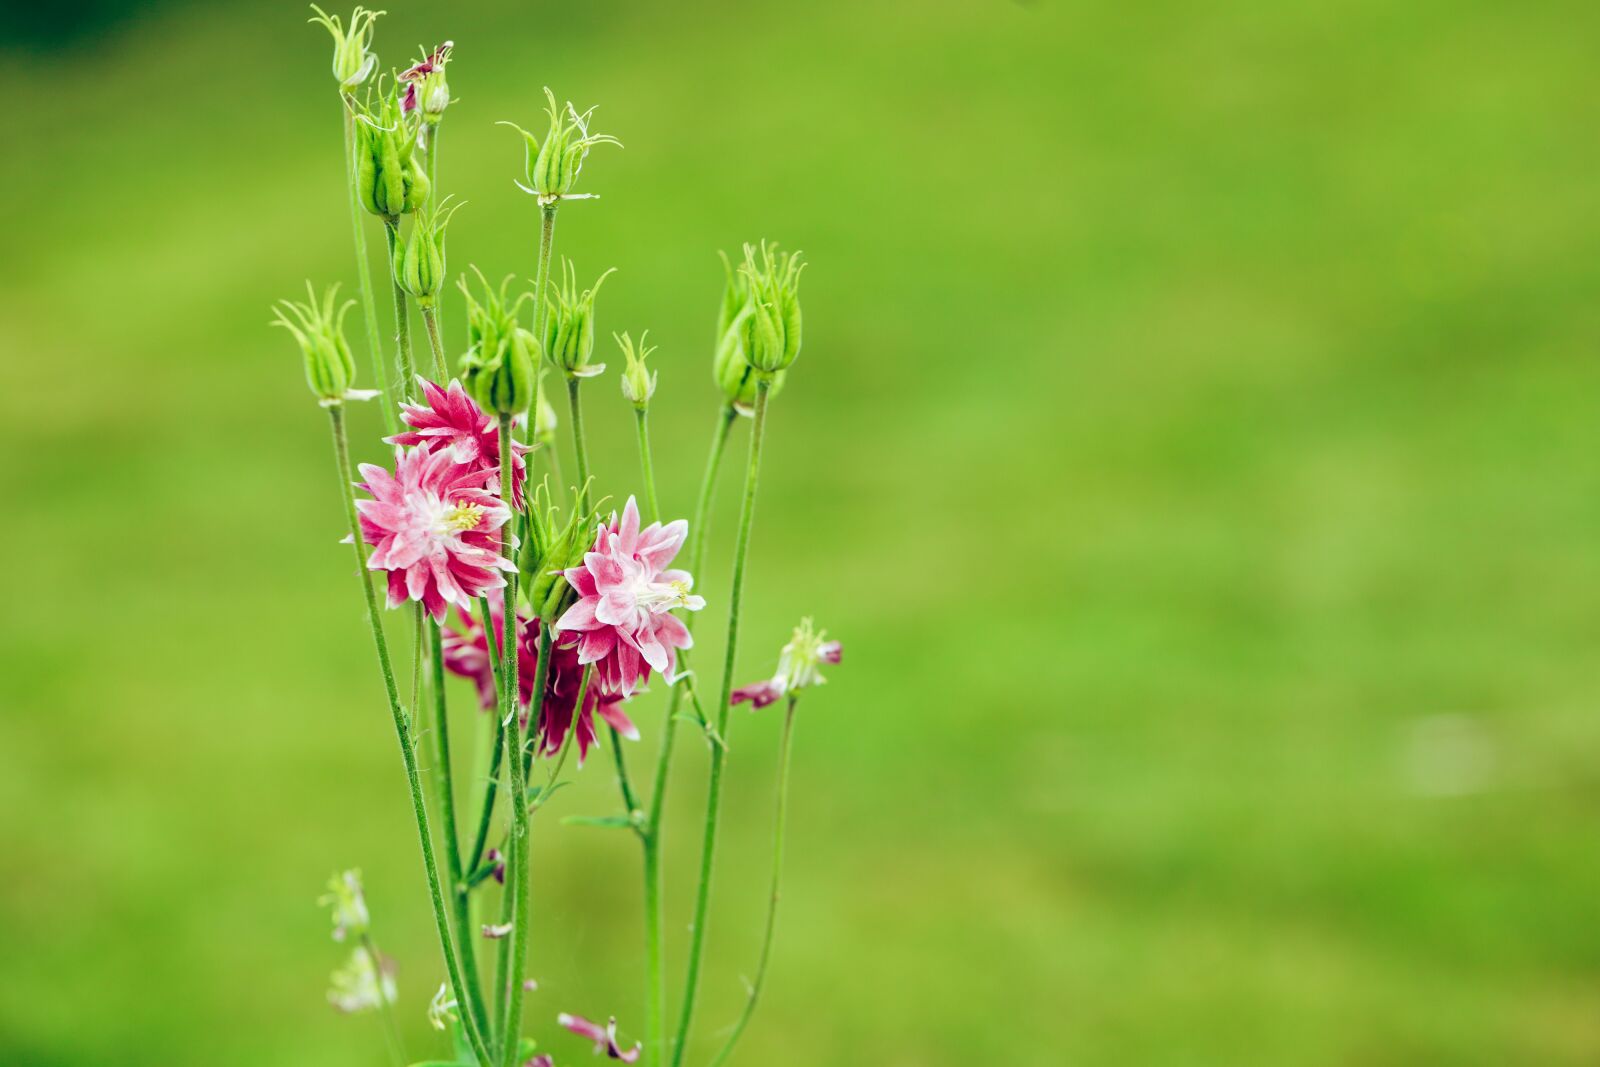 Canon EOS R sample photo. Flower, pink, garden photography